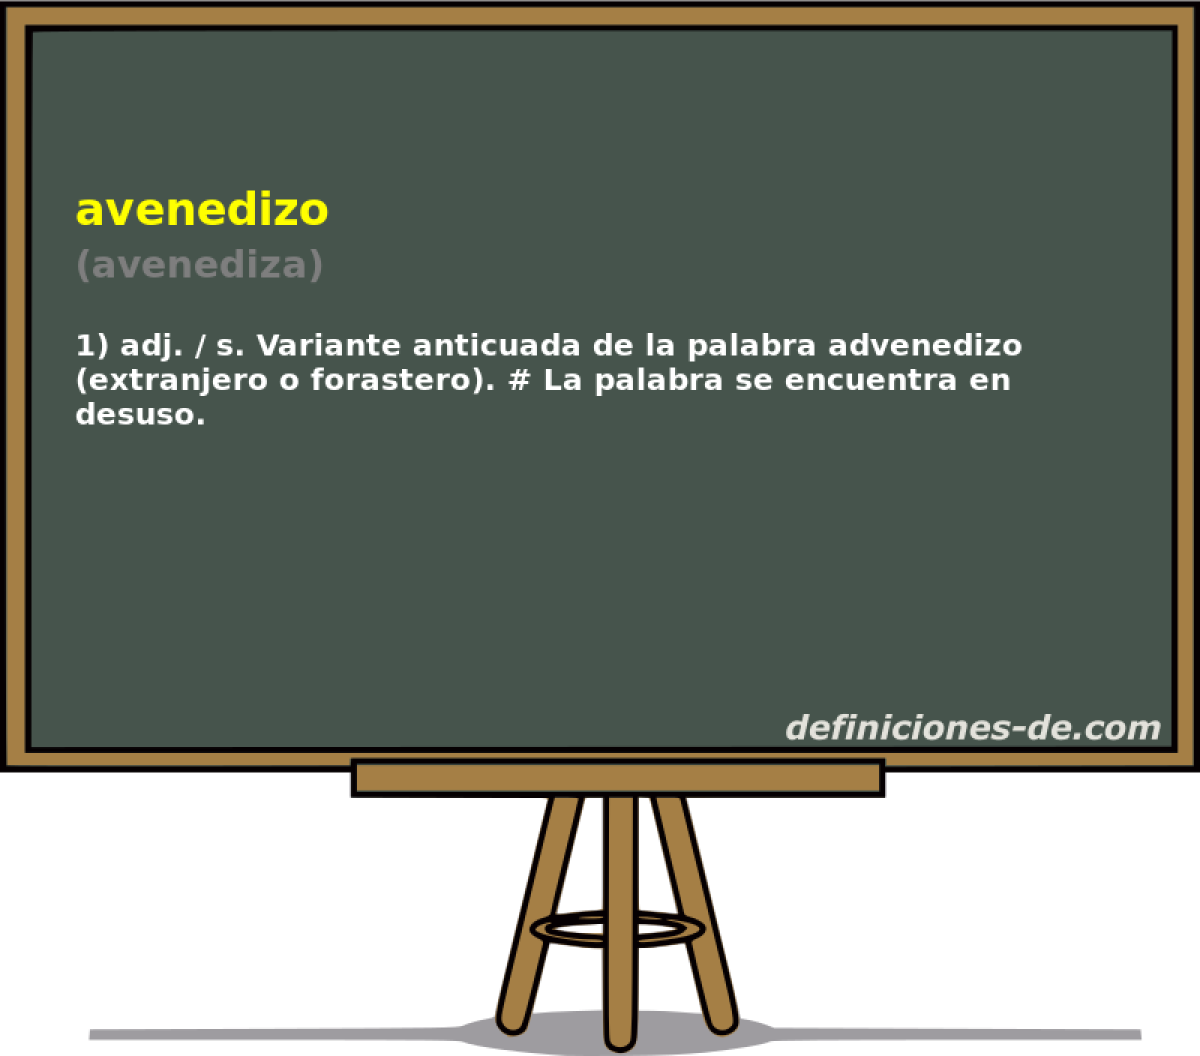 avenedizo (avenediza)